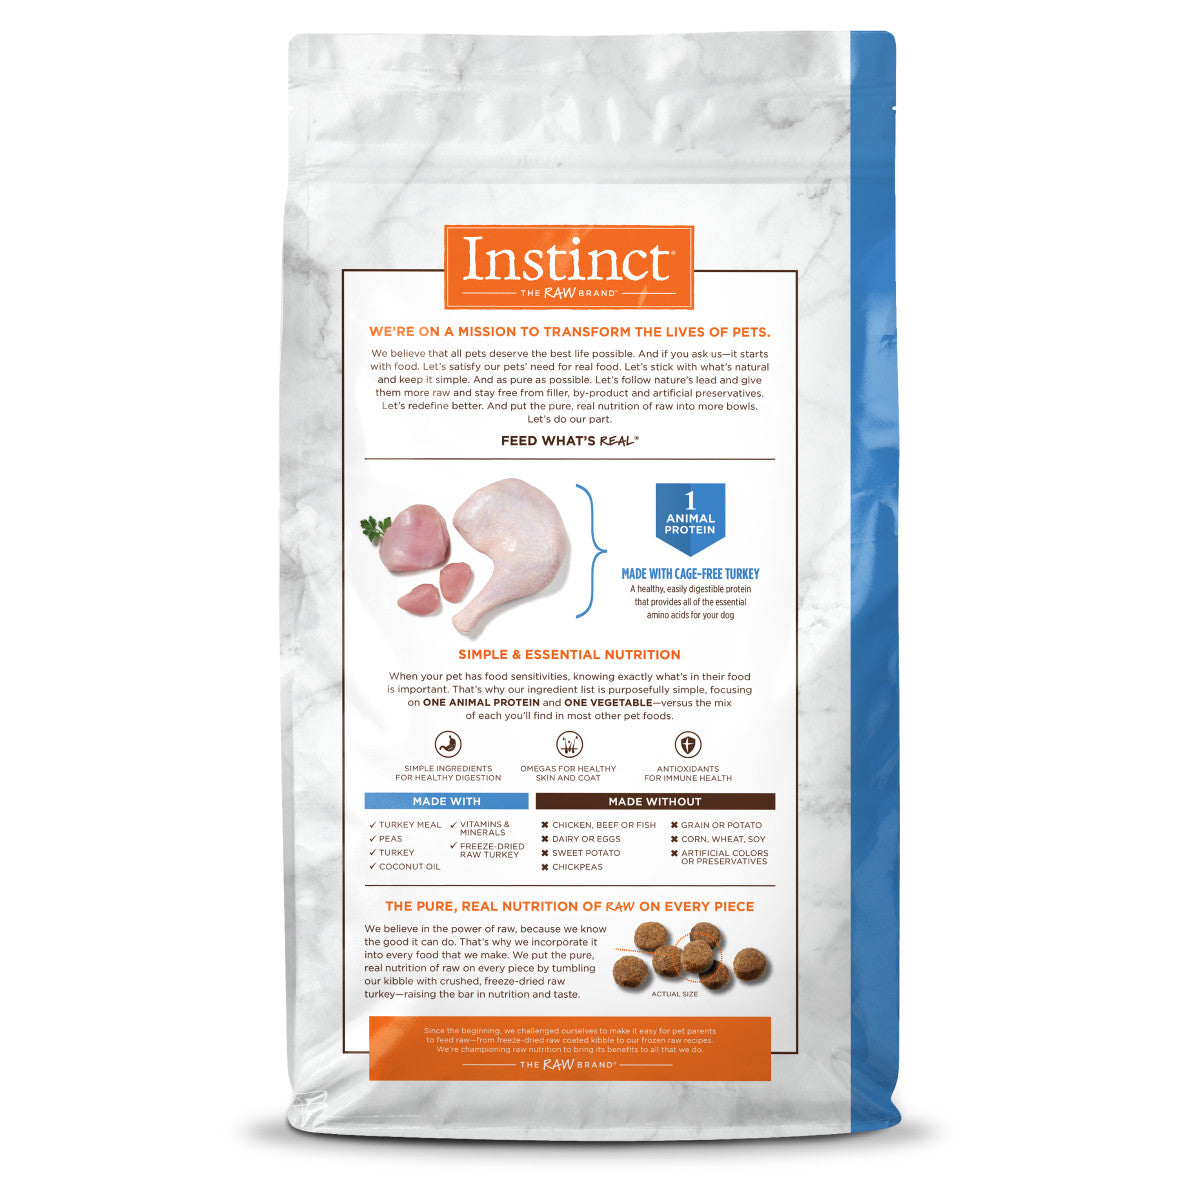 Instinct - Limited Ingredient Diet Real Turkey Recipe